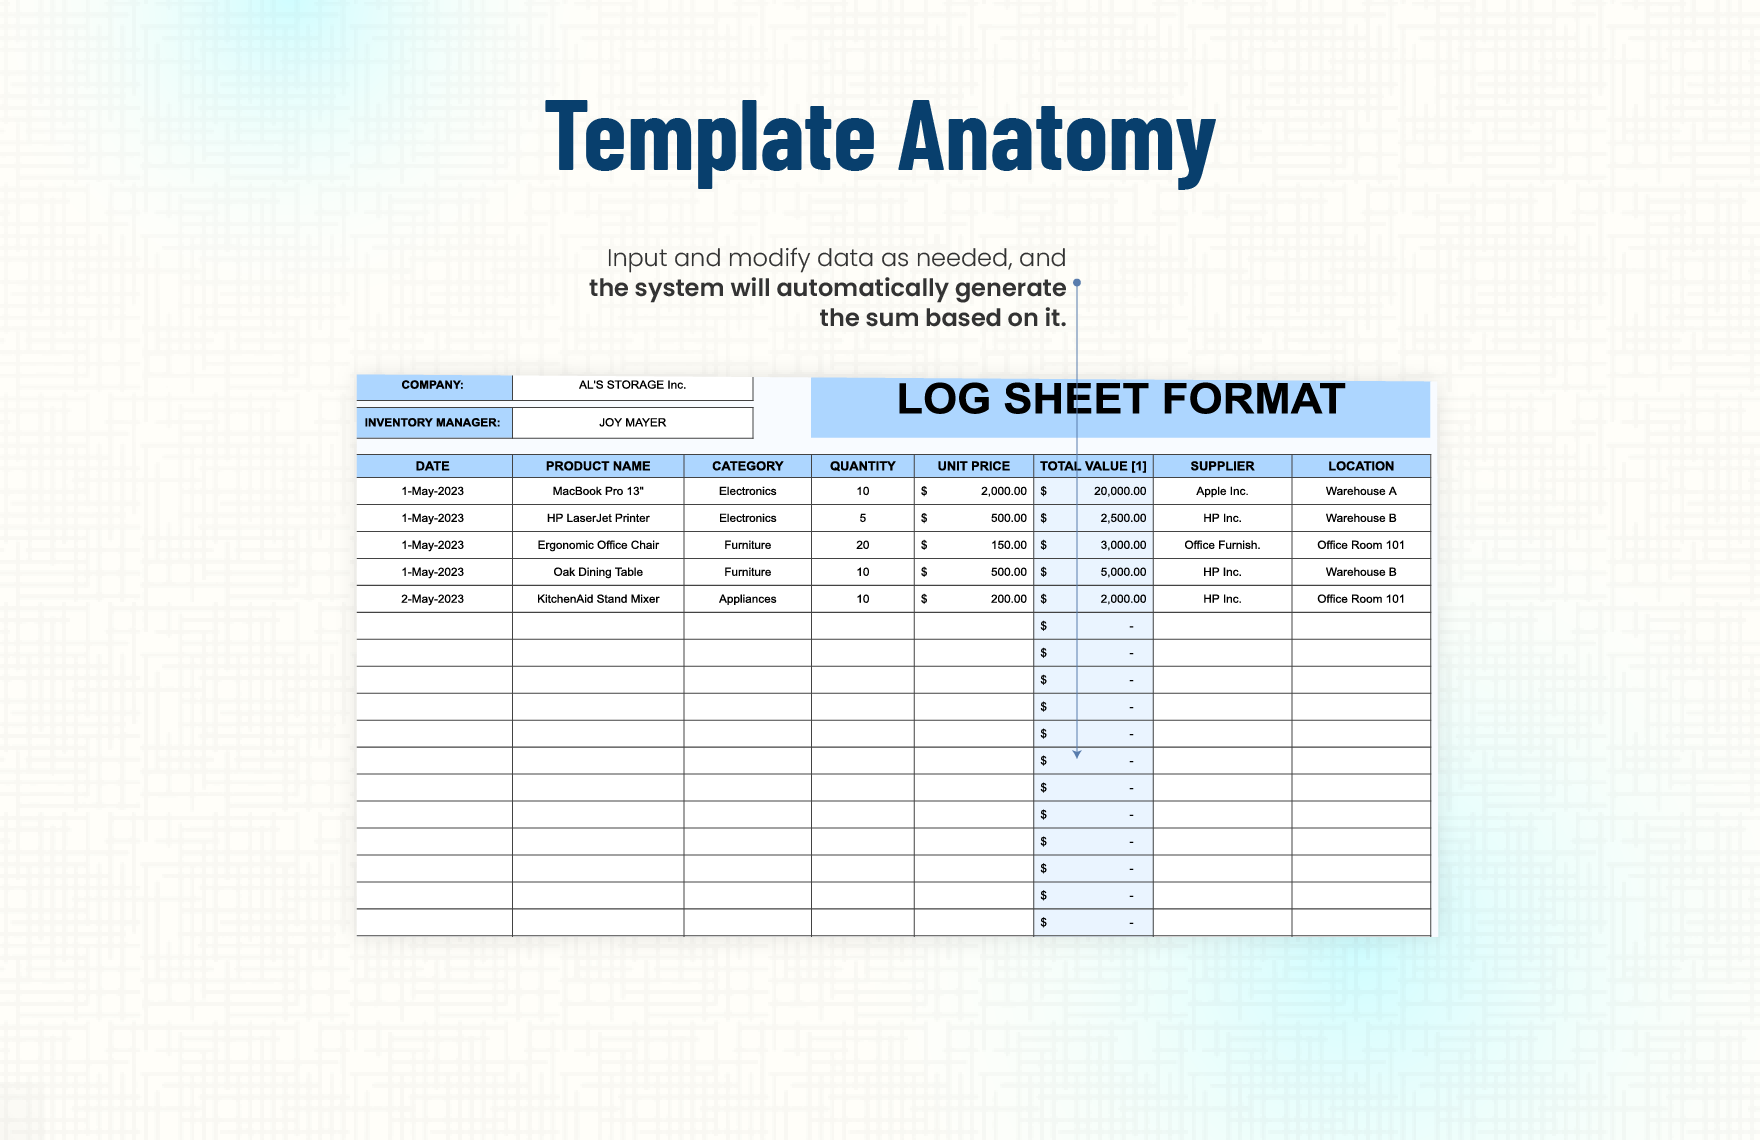 Log Sheet Format Template